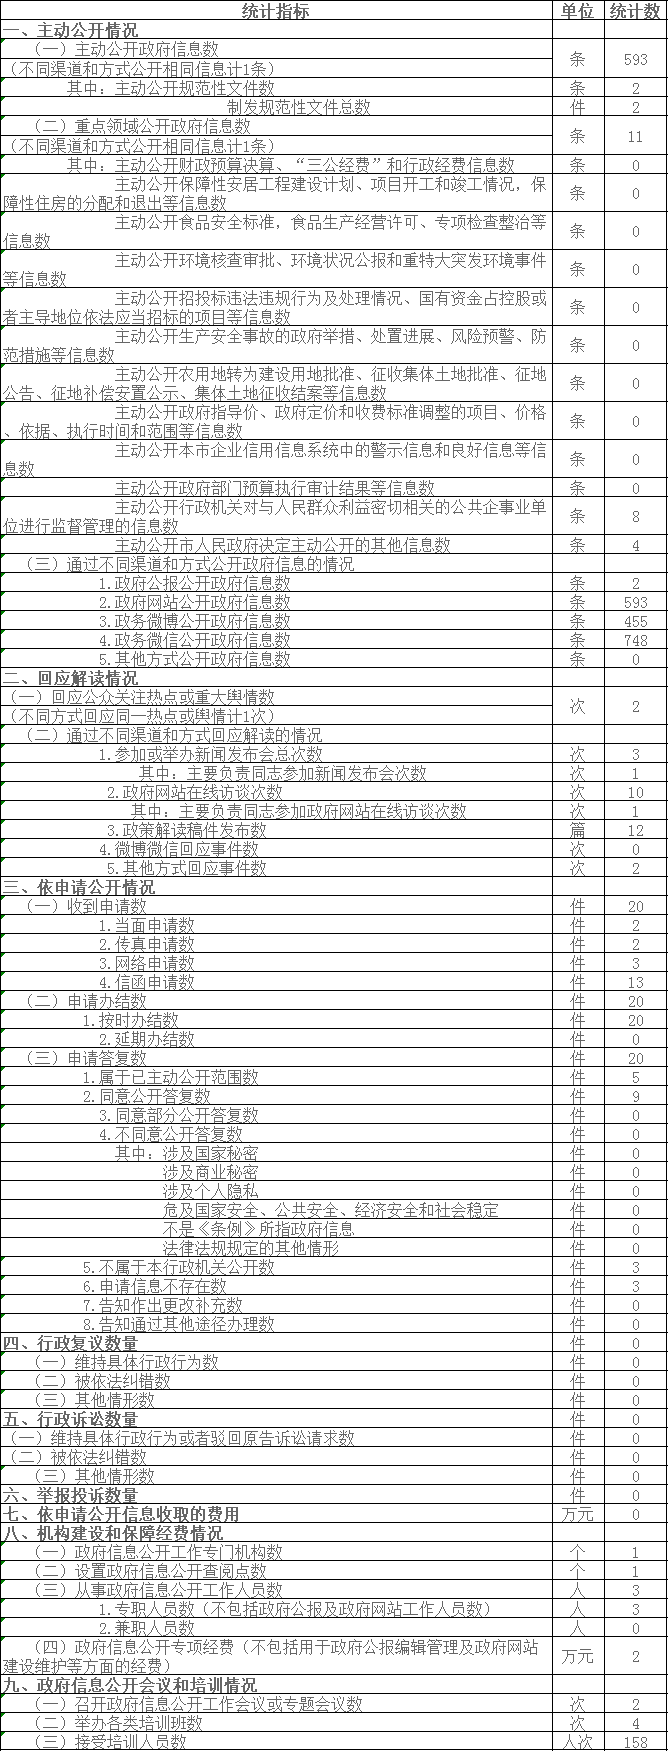 北京市农村工作委员会政府信息公开情况统计表